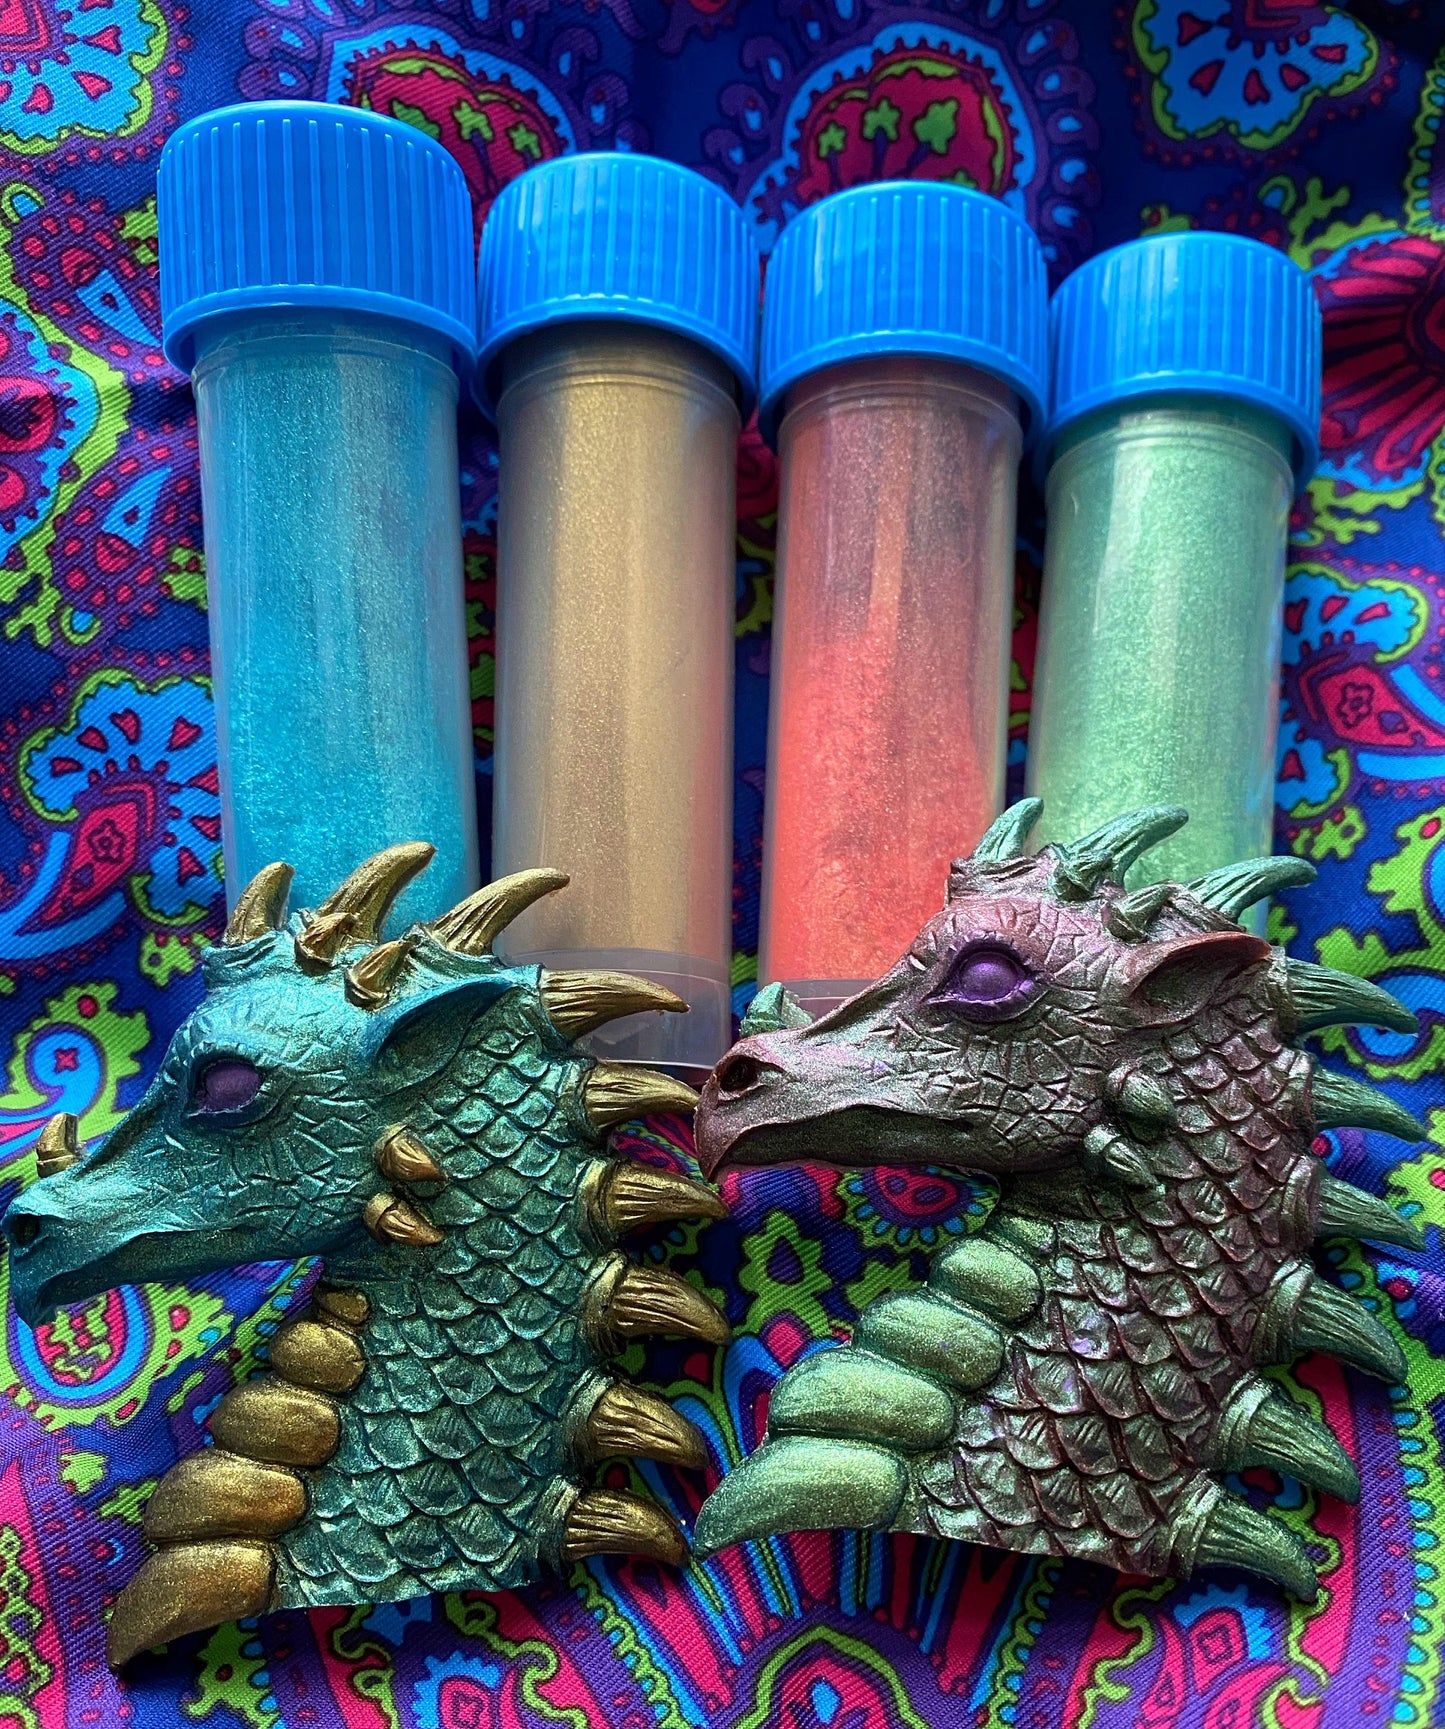 Dragon tales Chameleons  (Full size)